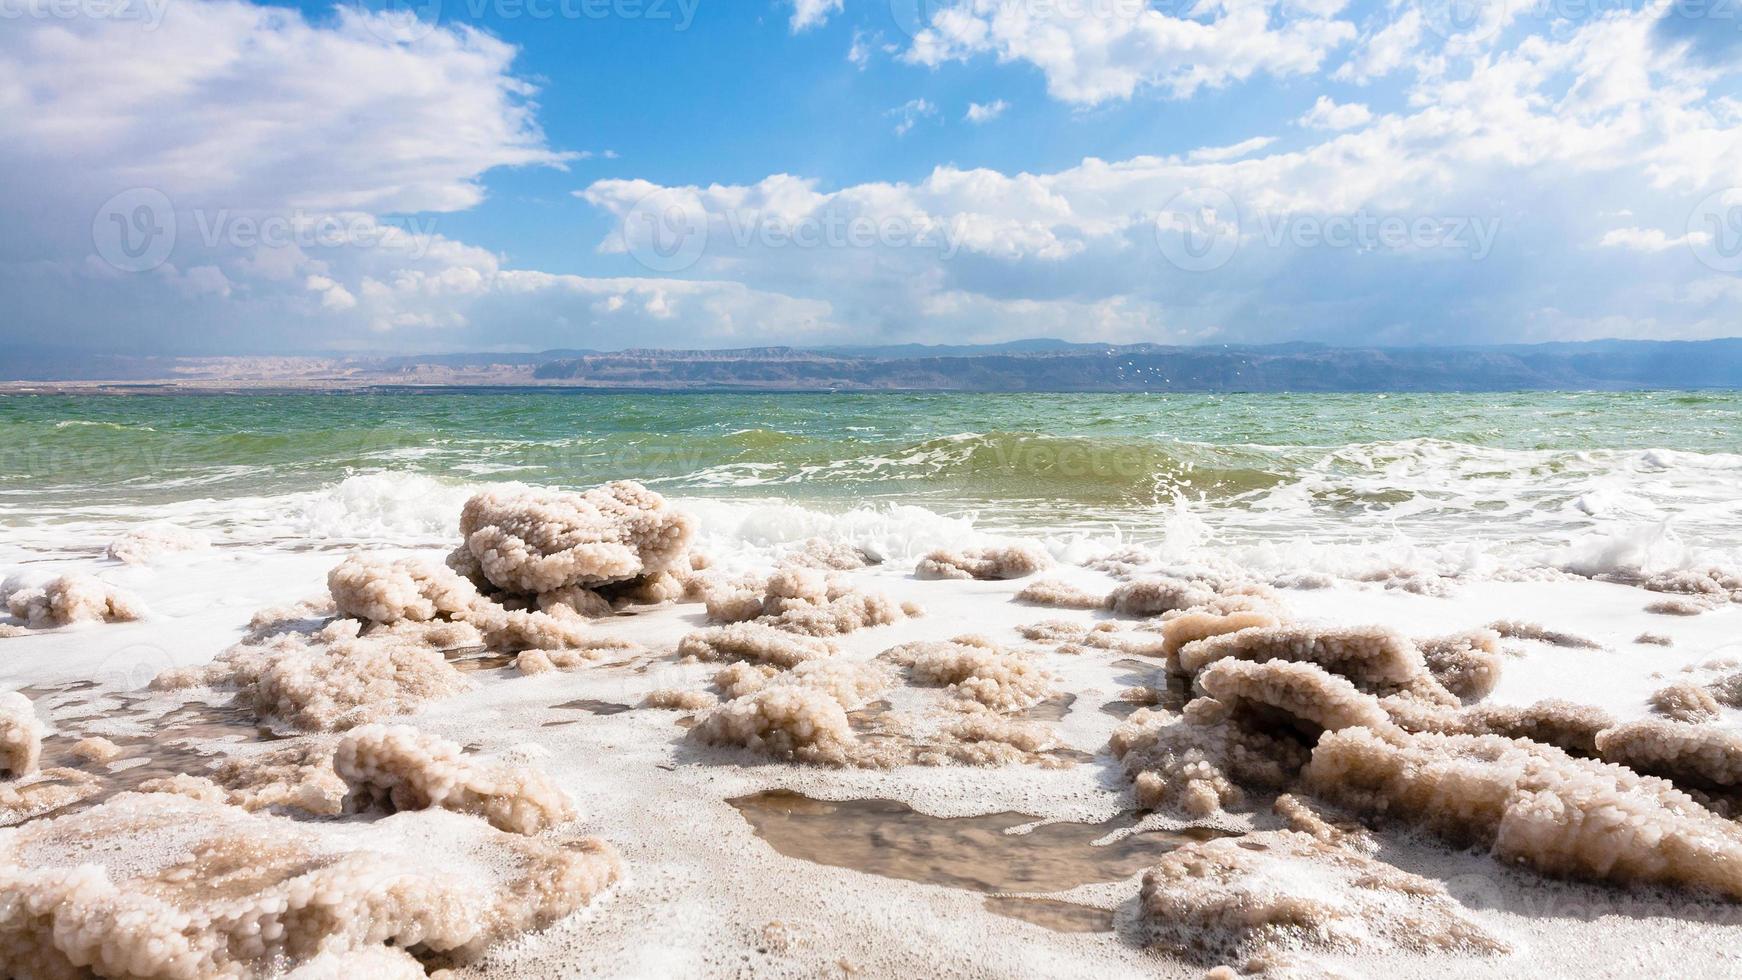 crystalline salt on surface of Dead Sea coastline photo